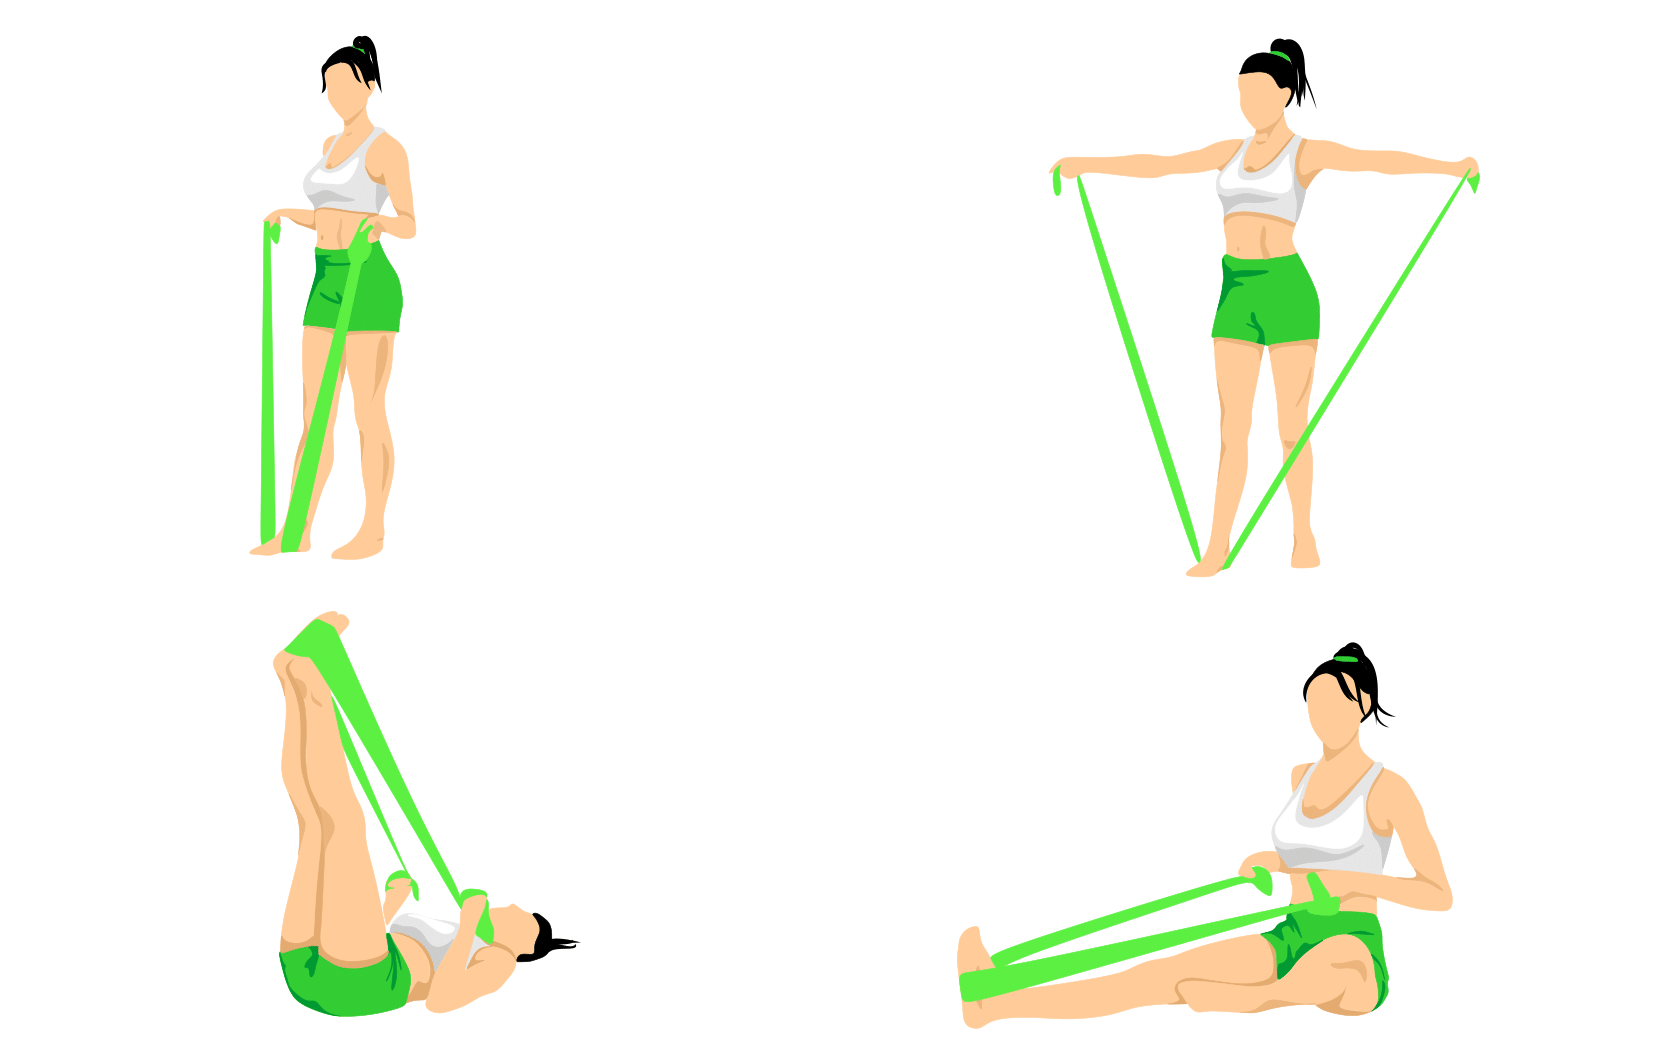 Упражнения с резиновым эспандером: для женщин и для мужчин в домашних условиях | irksportmol.ru